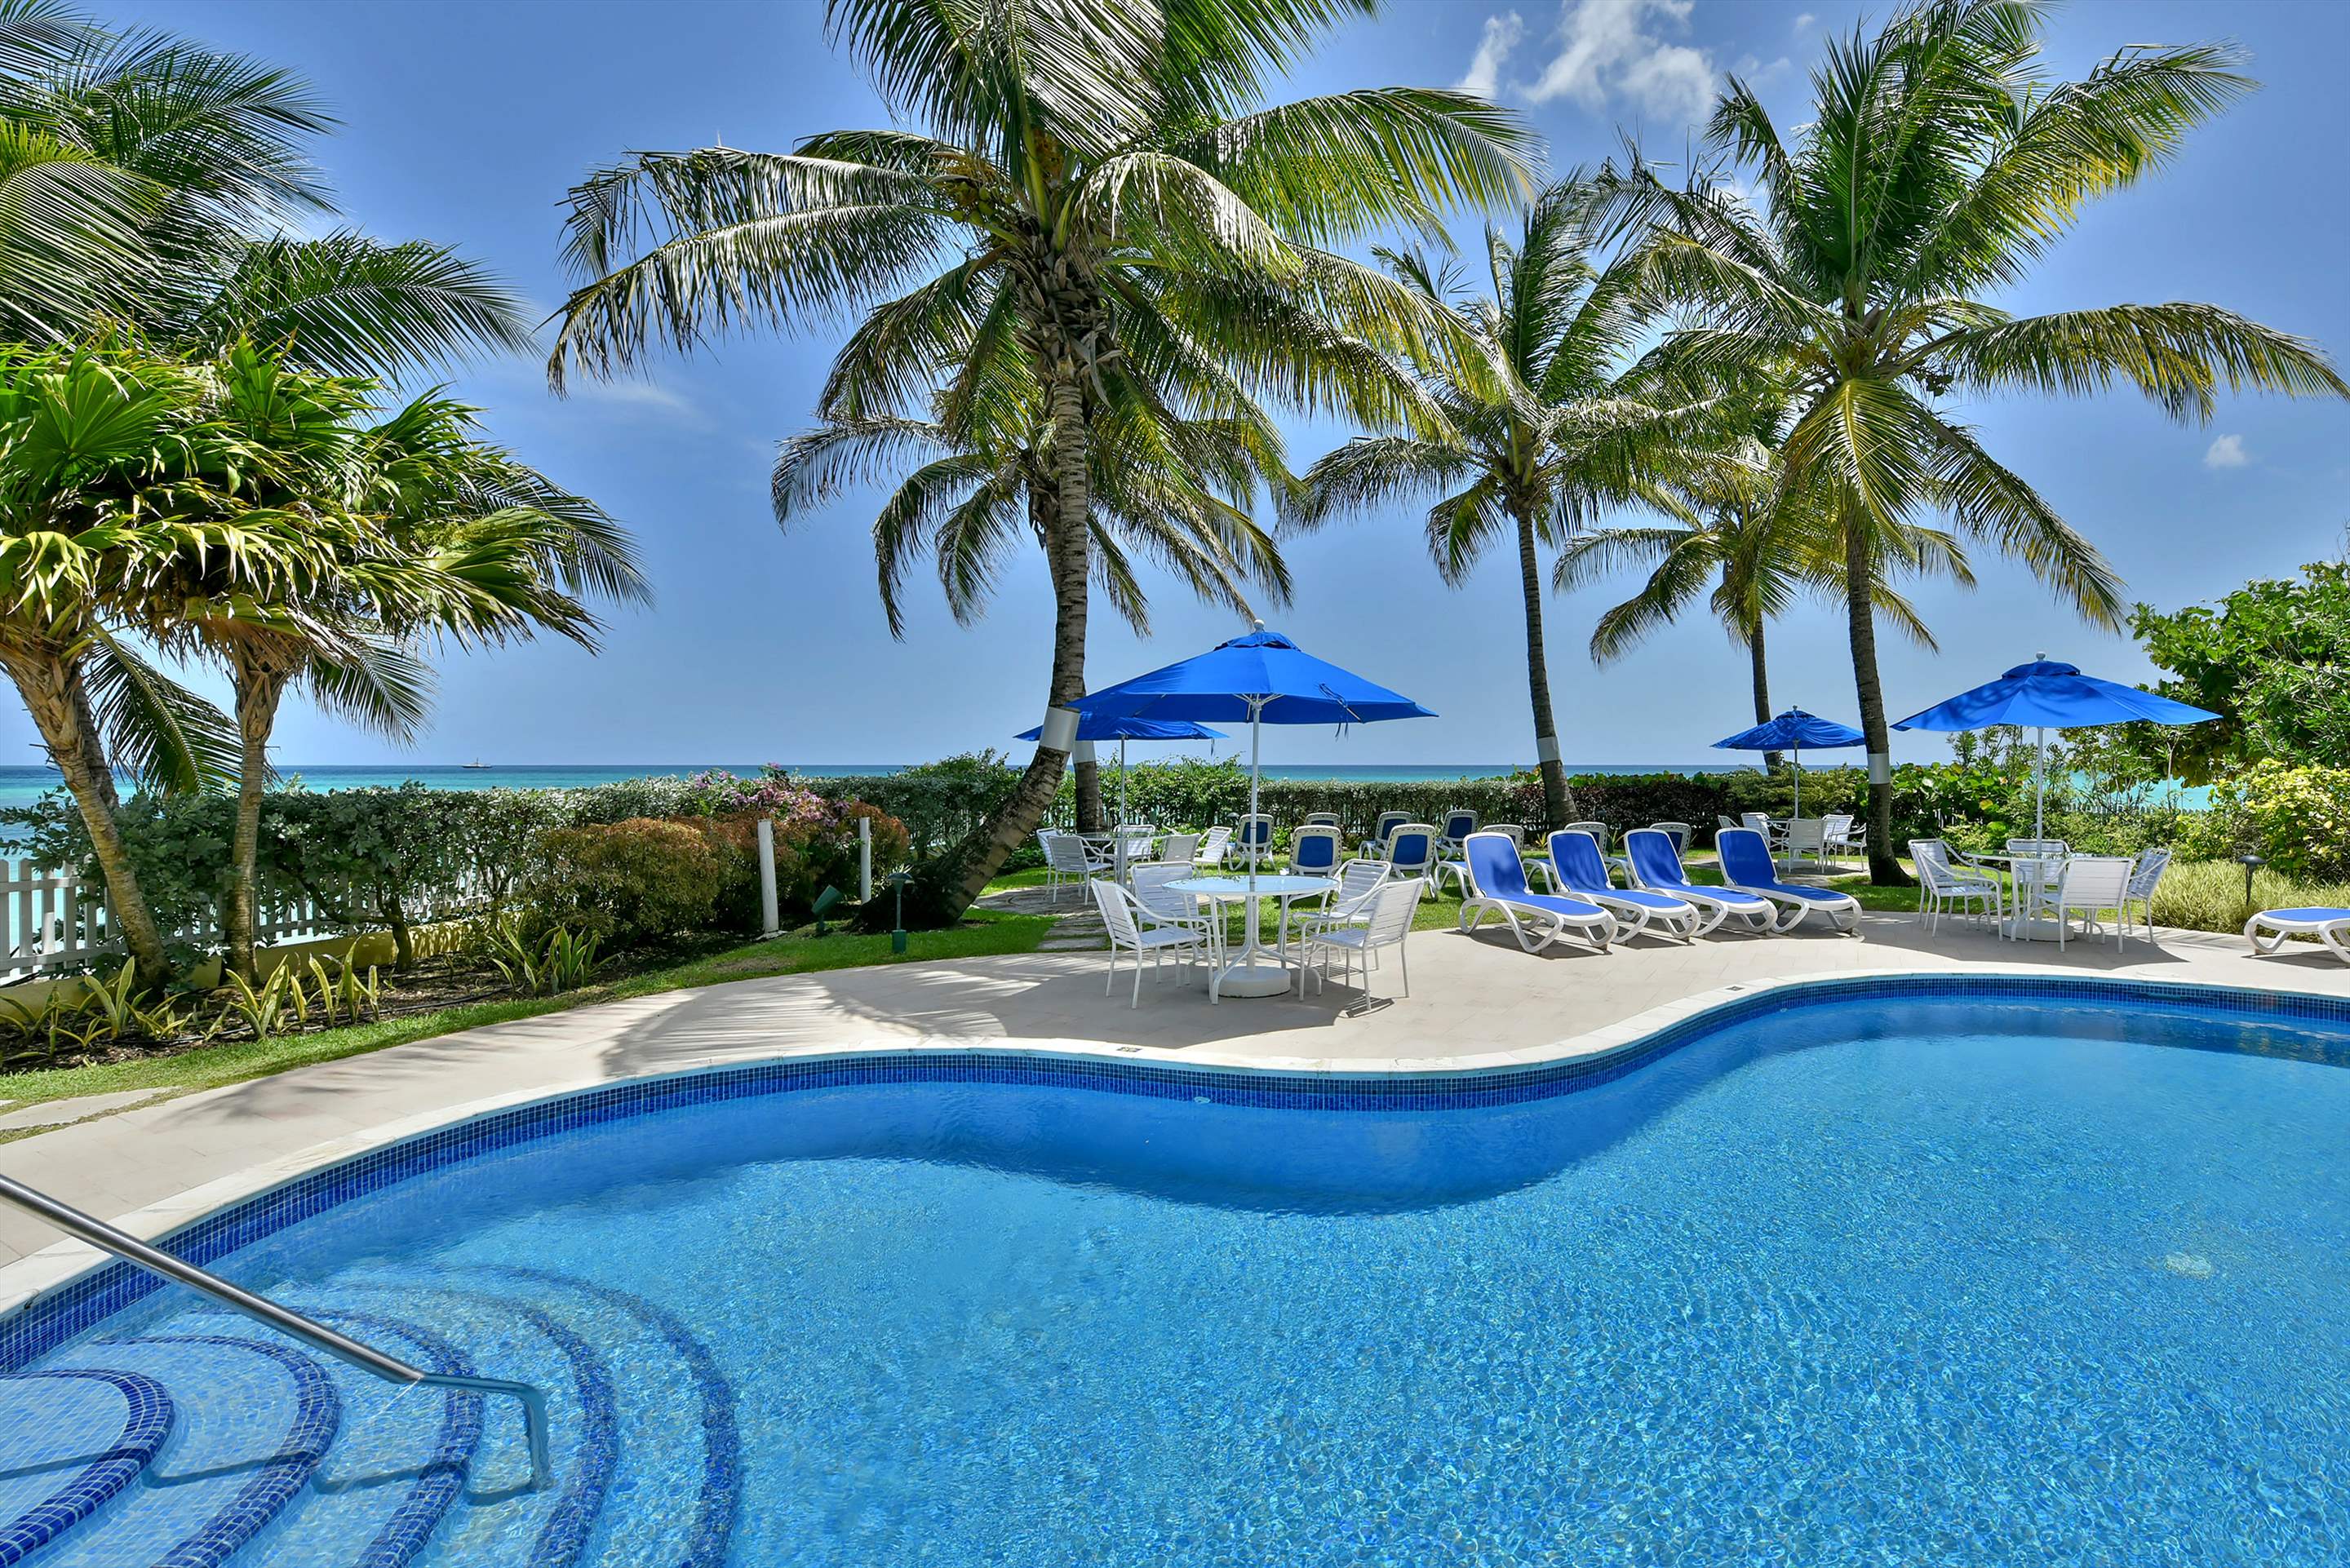 Maxwell Beach Villas 302, 2 bedroom, 2 bedroom apartment in St. Lawrence Gap & South Coast, Barbados Photo #1